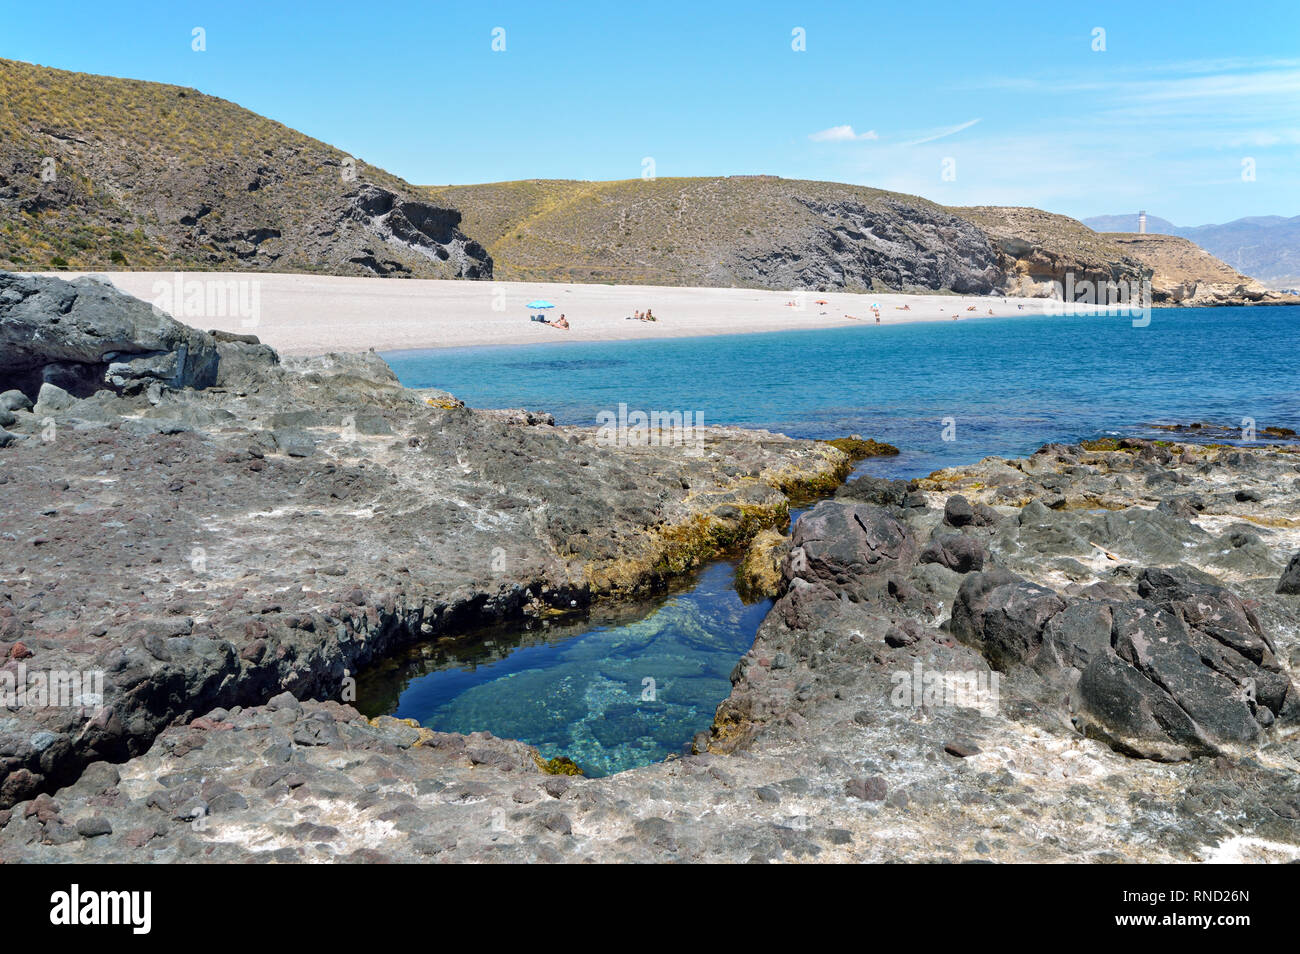 Playa de los Muertos (Plage des Morts) est une des plus belles plages de l'Espagne (Andalousie) avec des eaux cristallines. Banque D'Images